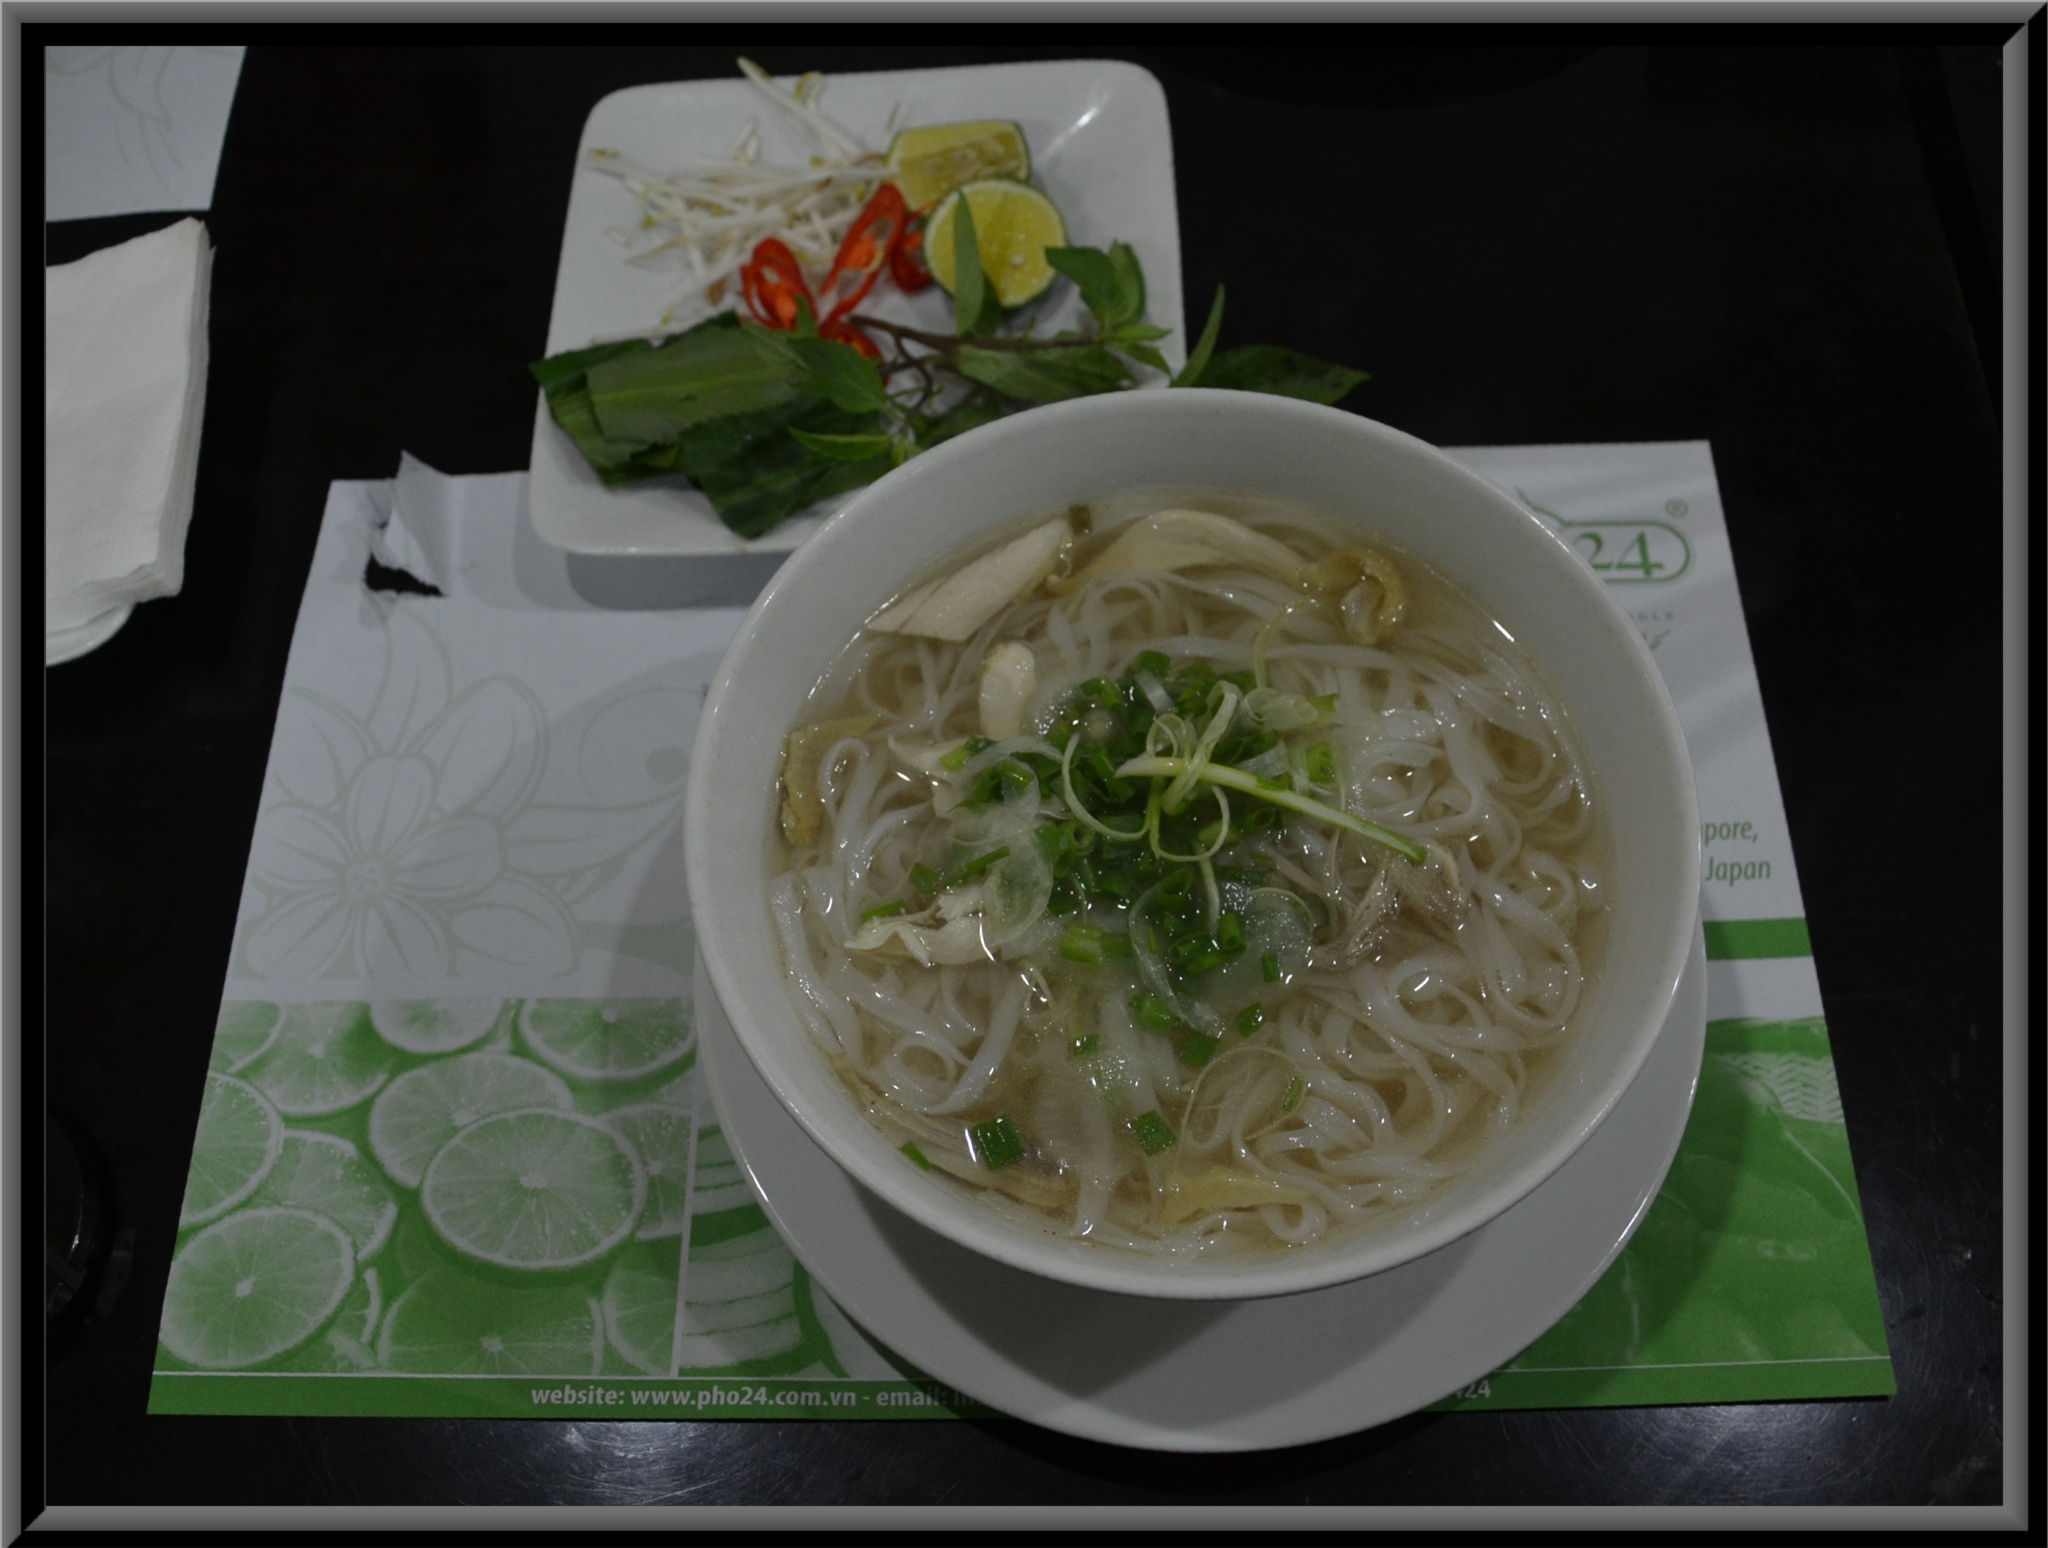 Une spcialit vietnamienne, la soupe ph